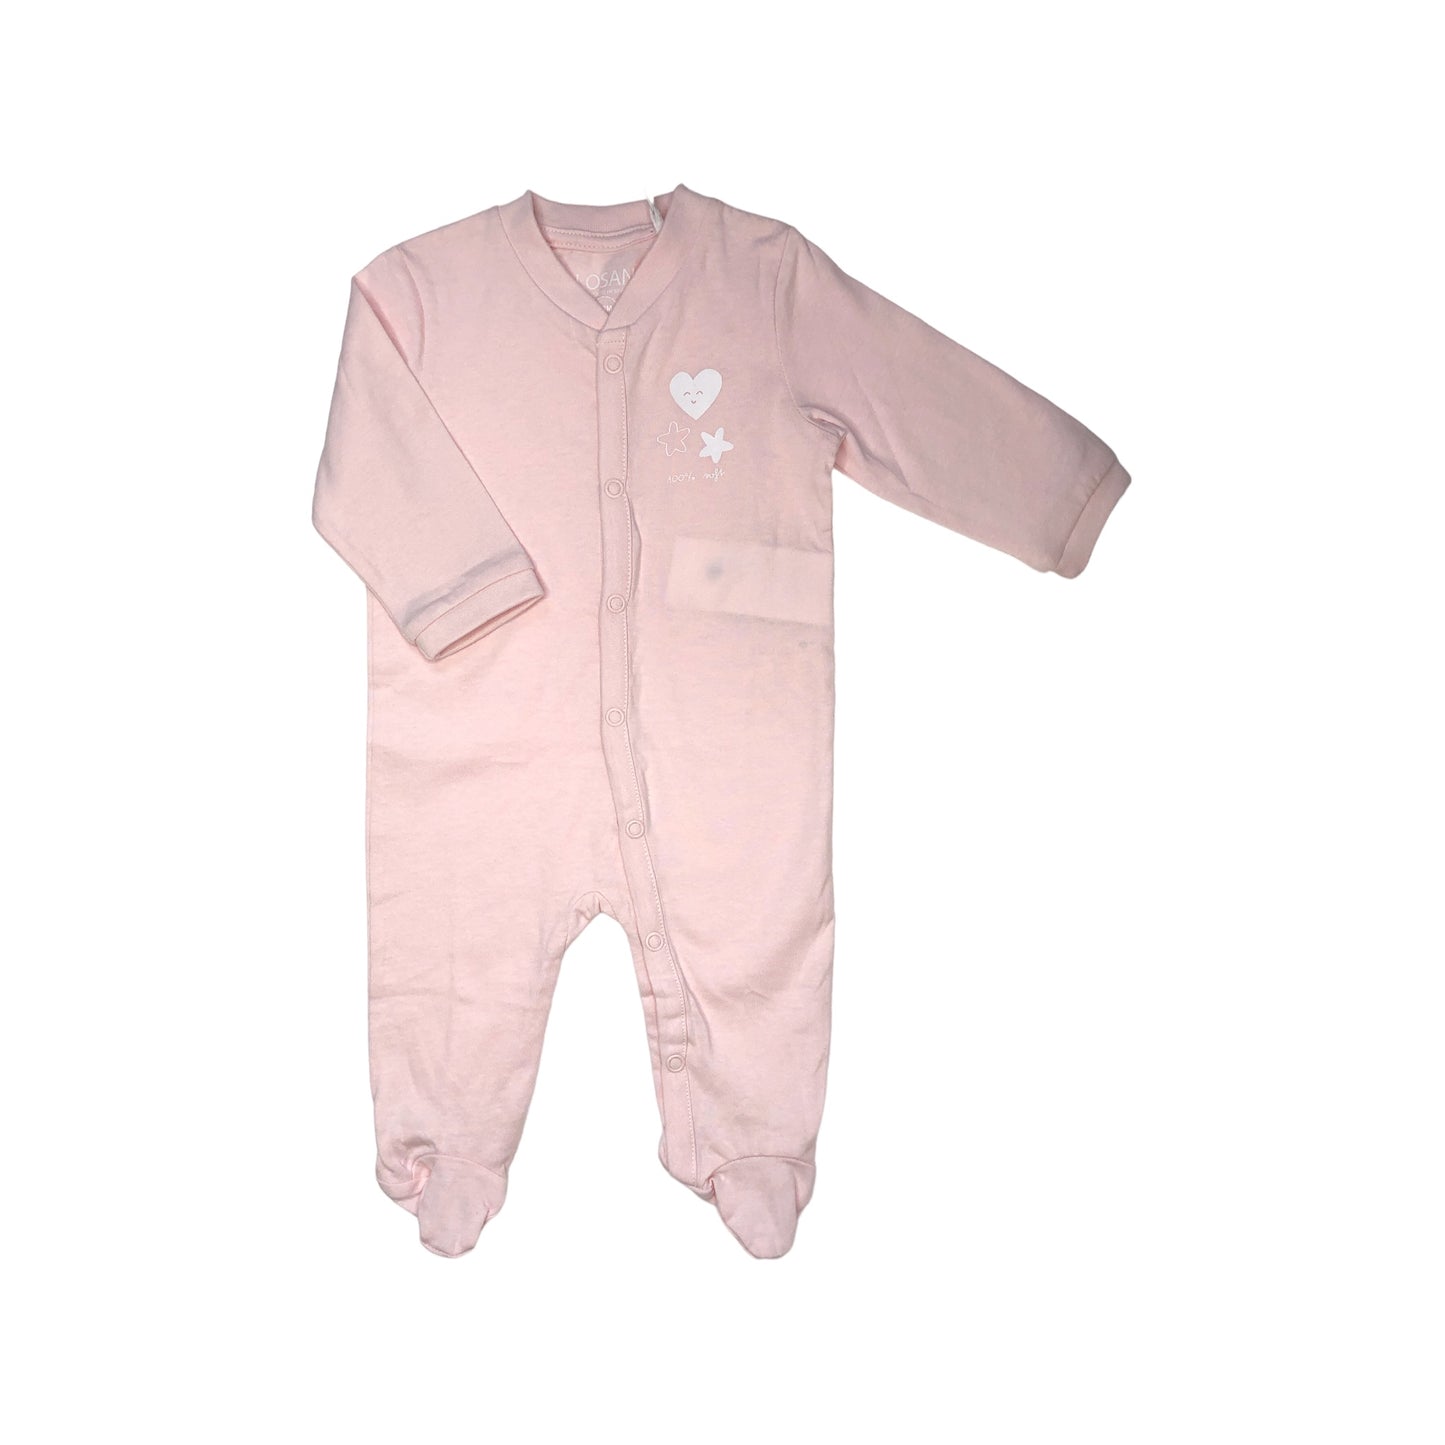 Mameluco 2 piezas rosa para bebé niña LOSAN